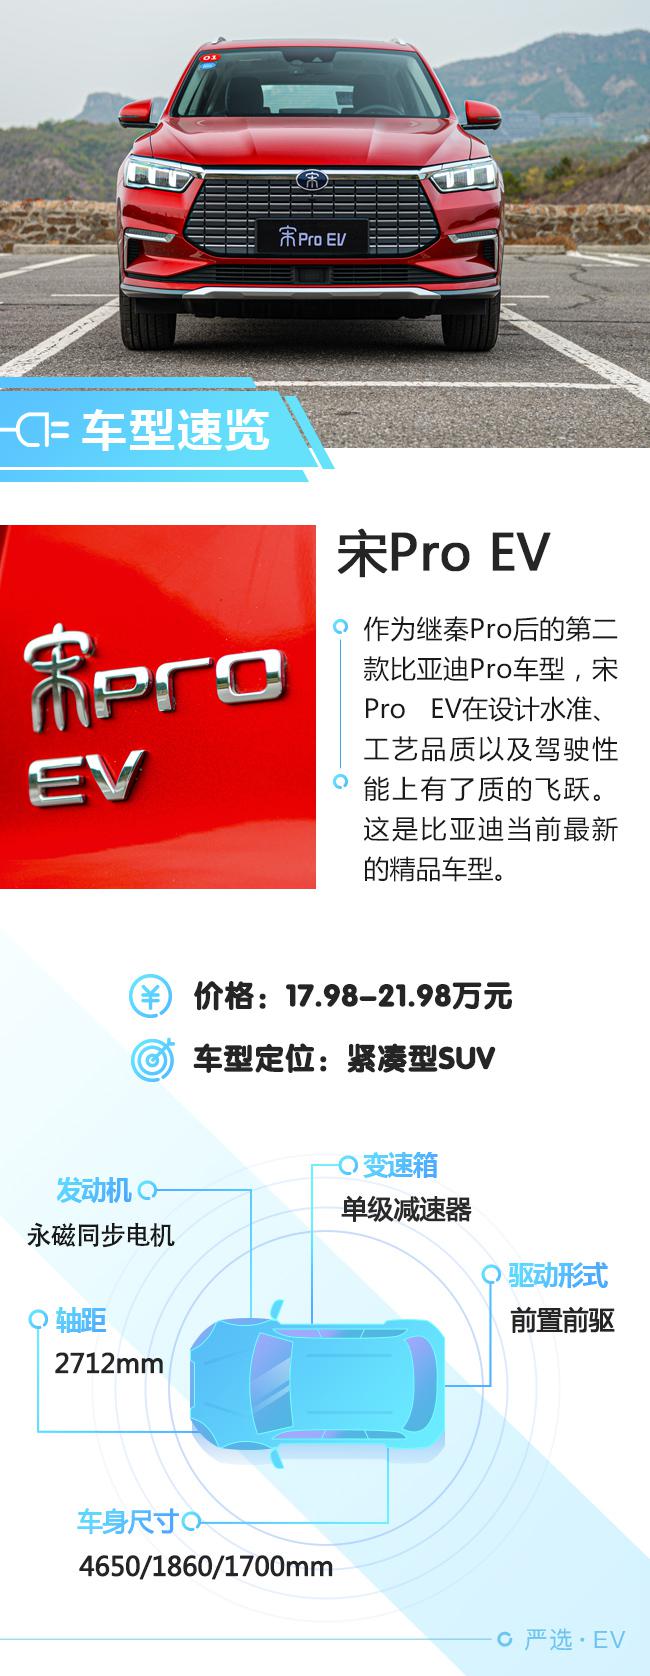 有国际范儿精品车 试驾宋Pro EV旗舰型